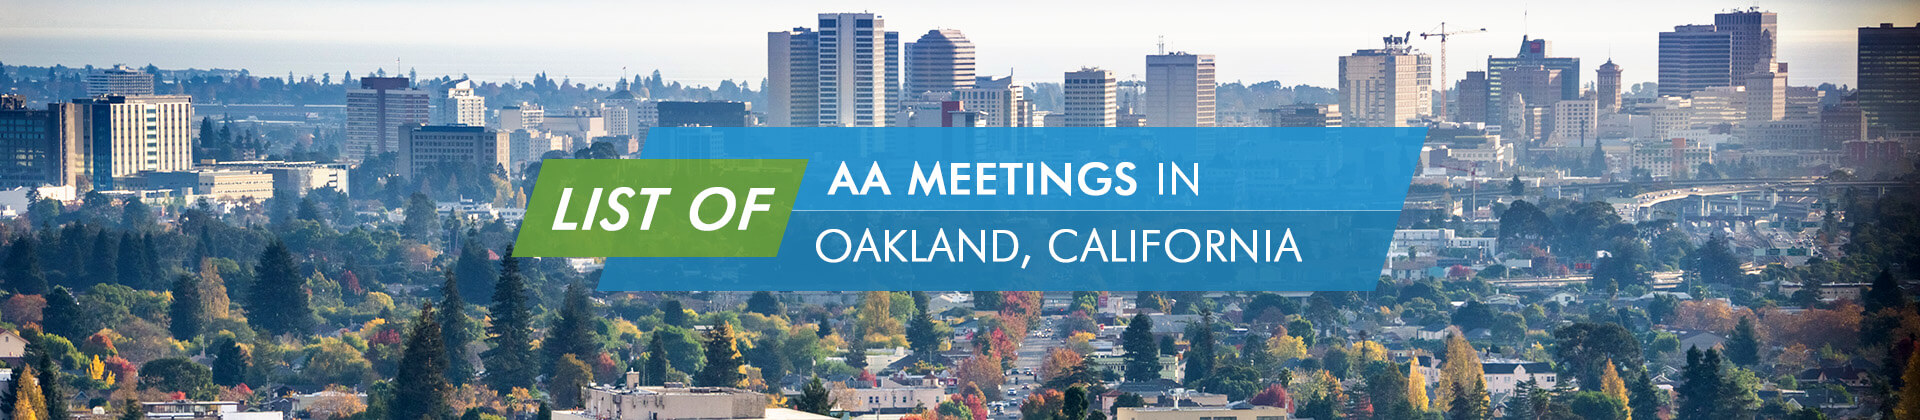 AA Meetings Oakland California